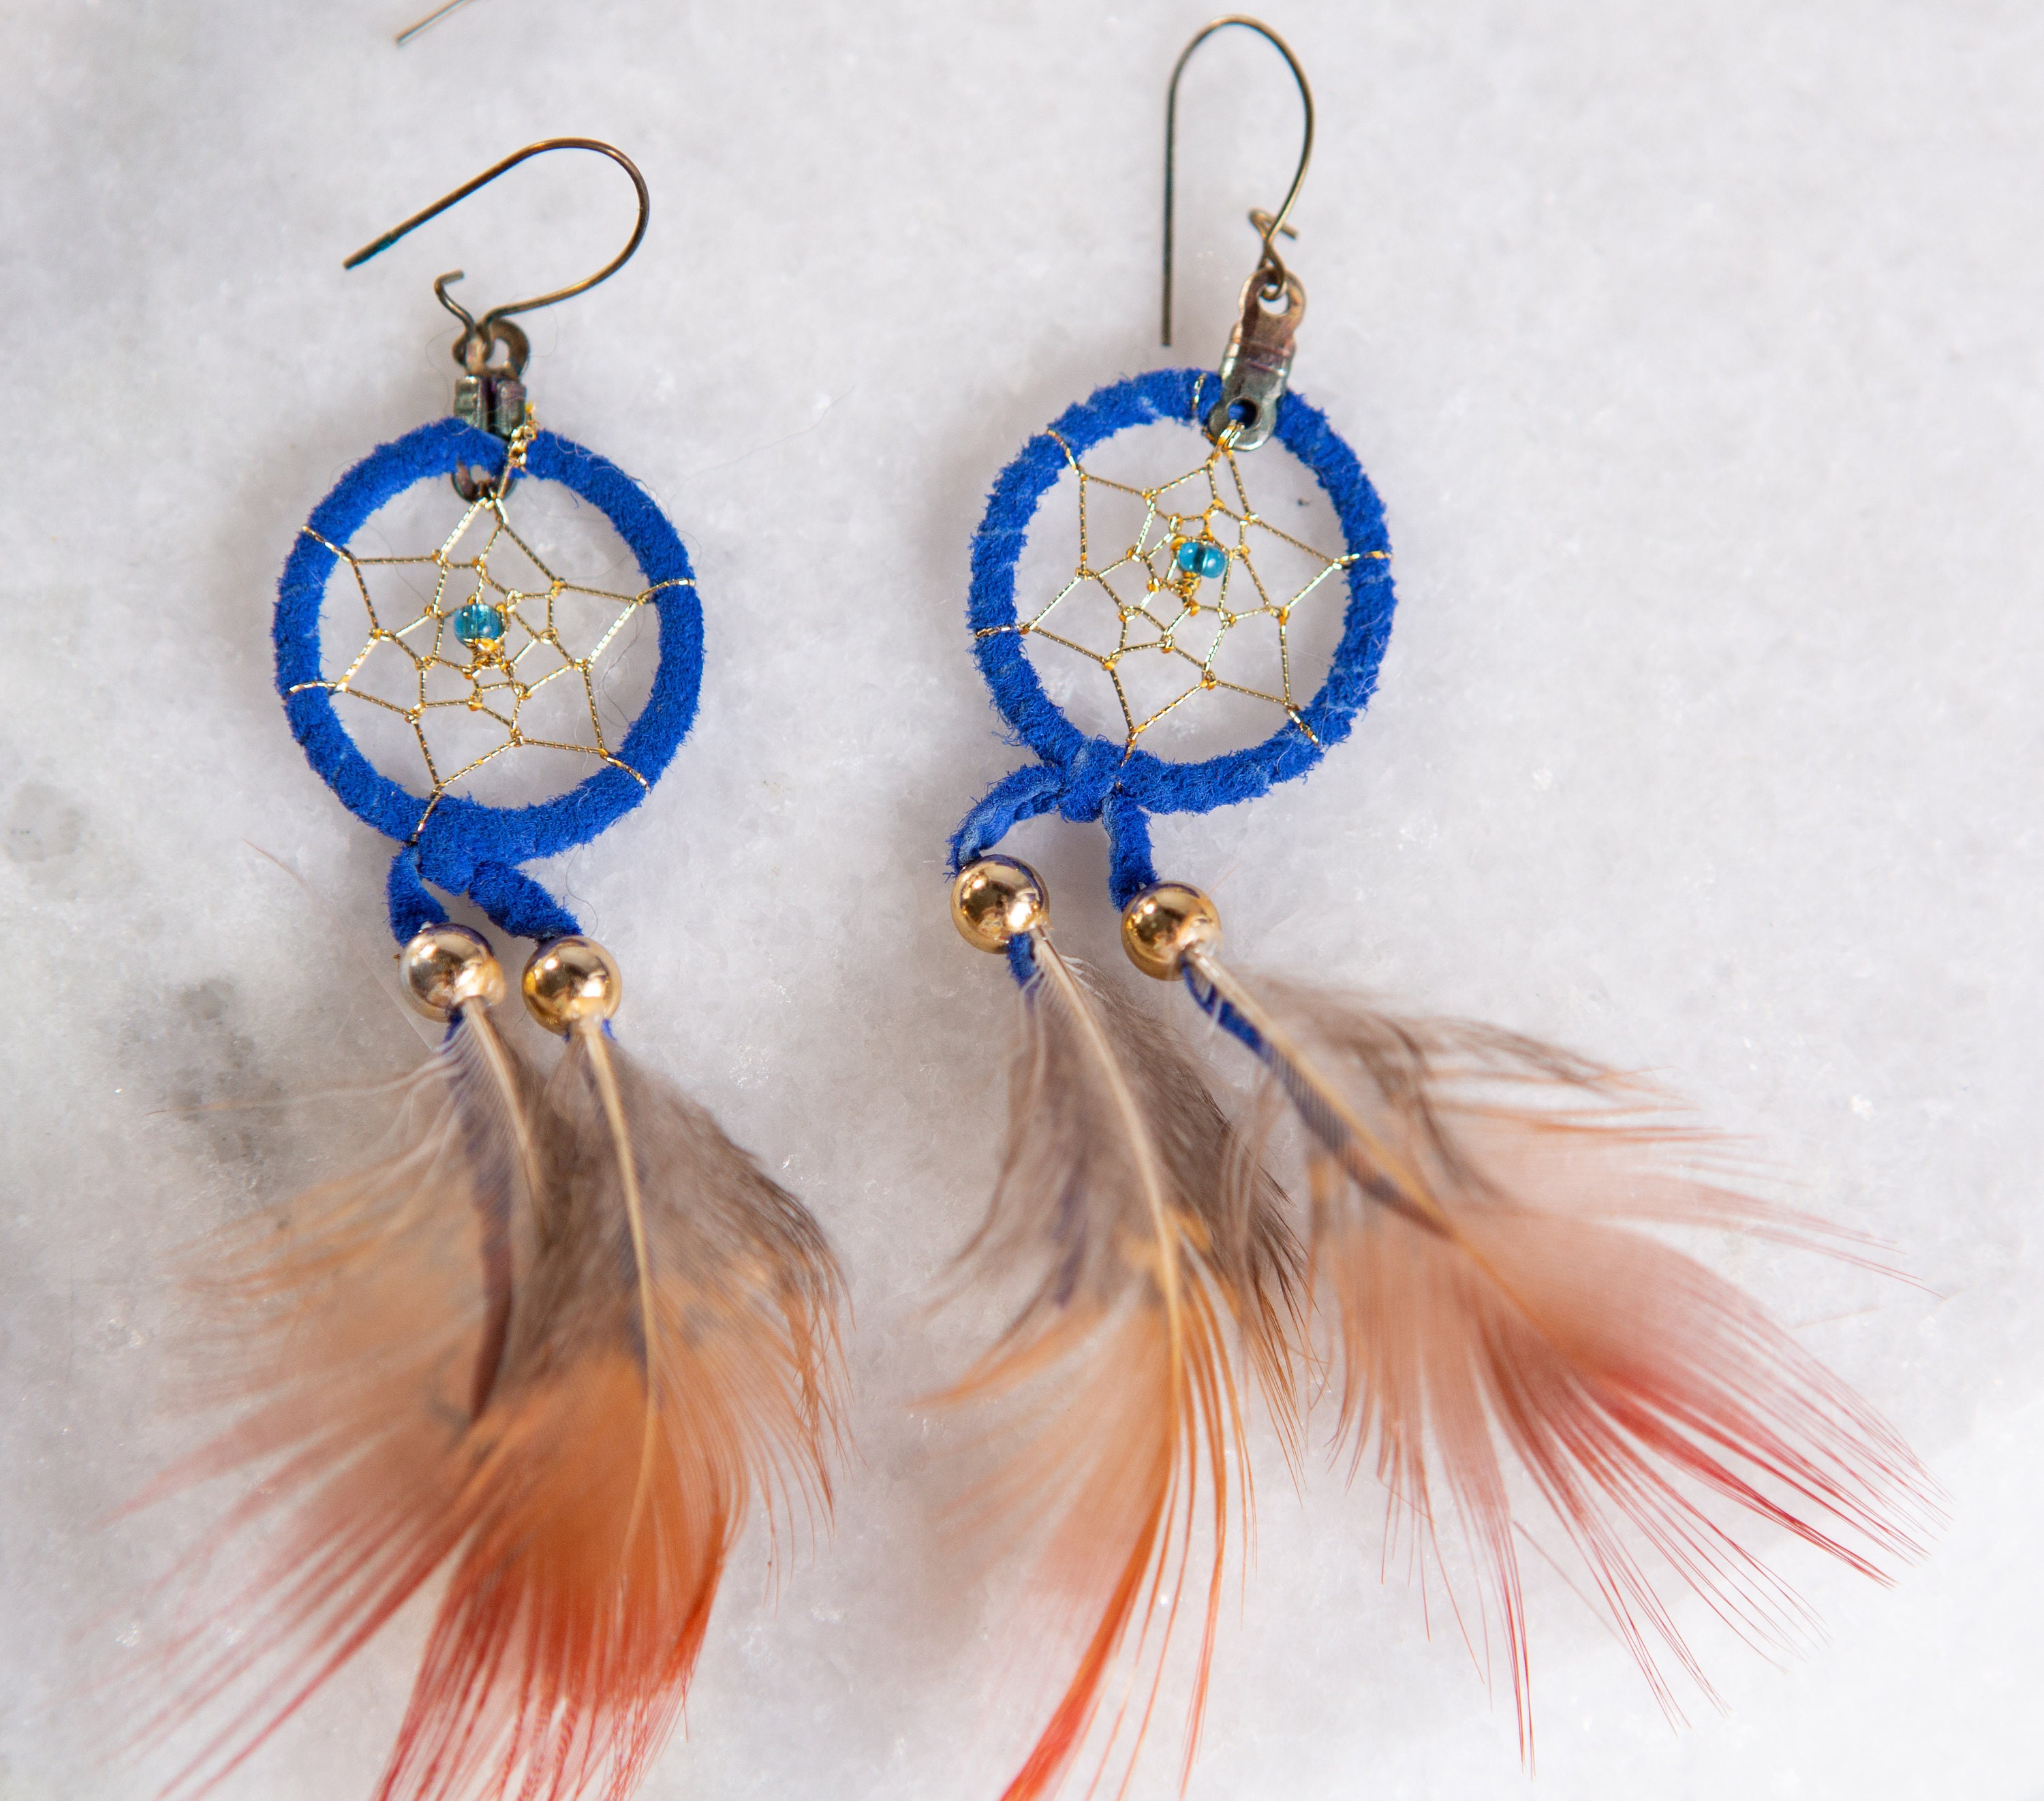 Feather Earrings Rainbow Dreamcatcher Earrings American Indian Inspired Jewelry Rainbow Jewelry Hippie Jewelry Dangling Earrings